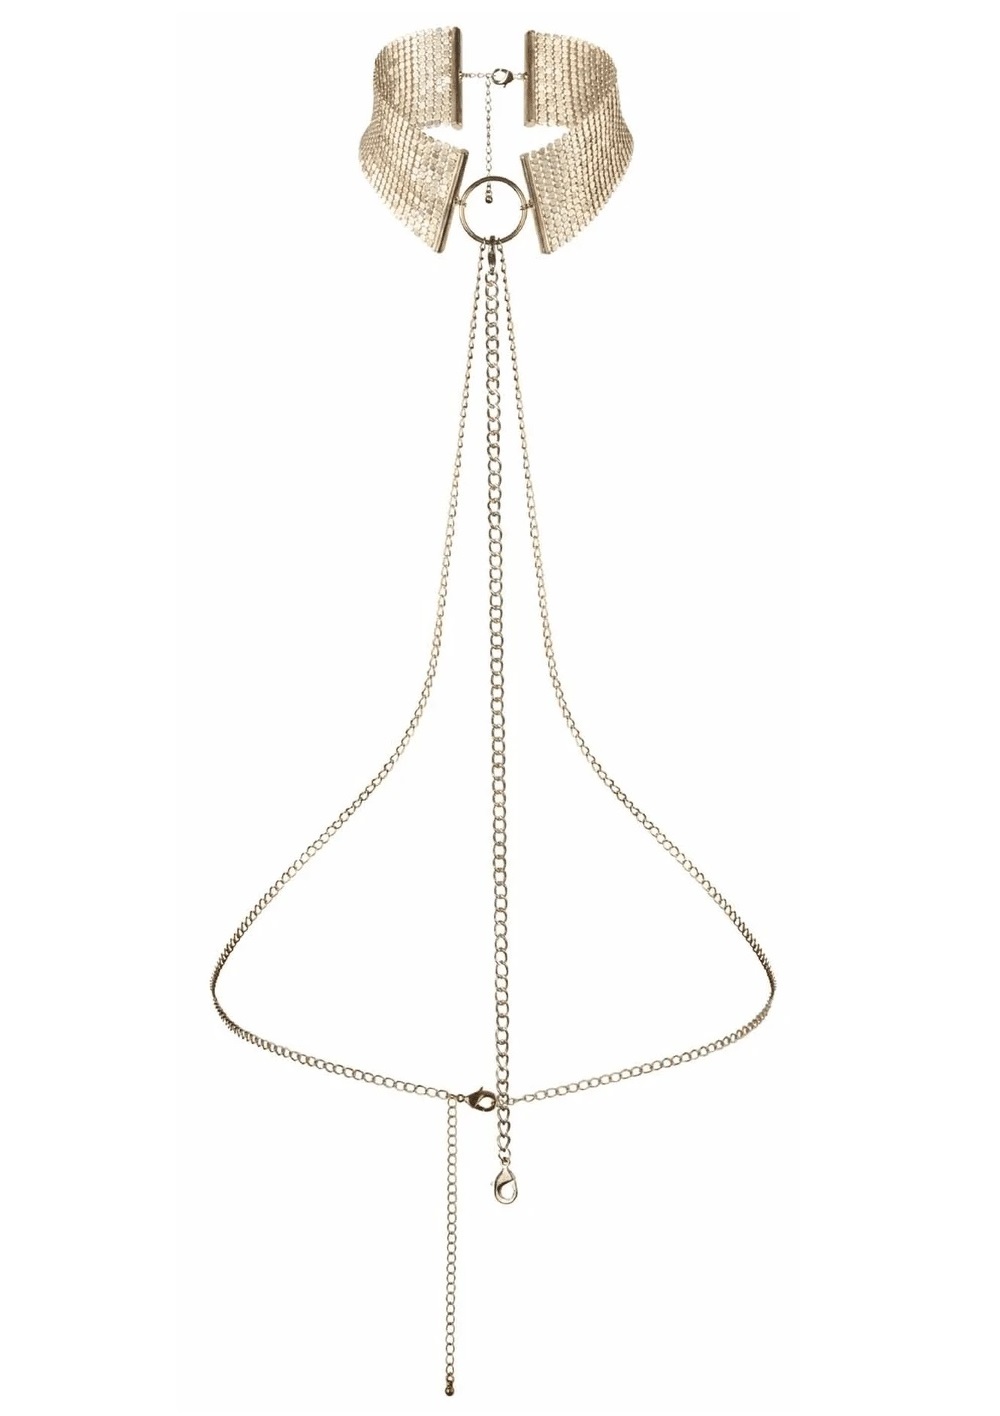 Bijoux-széles arany színű nyaklánc fémből.